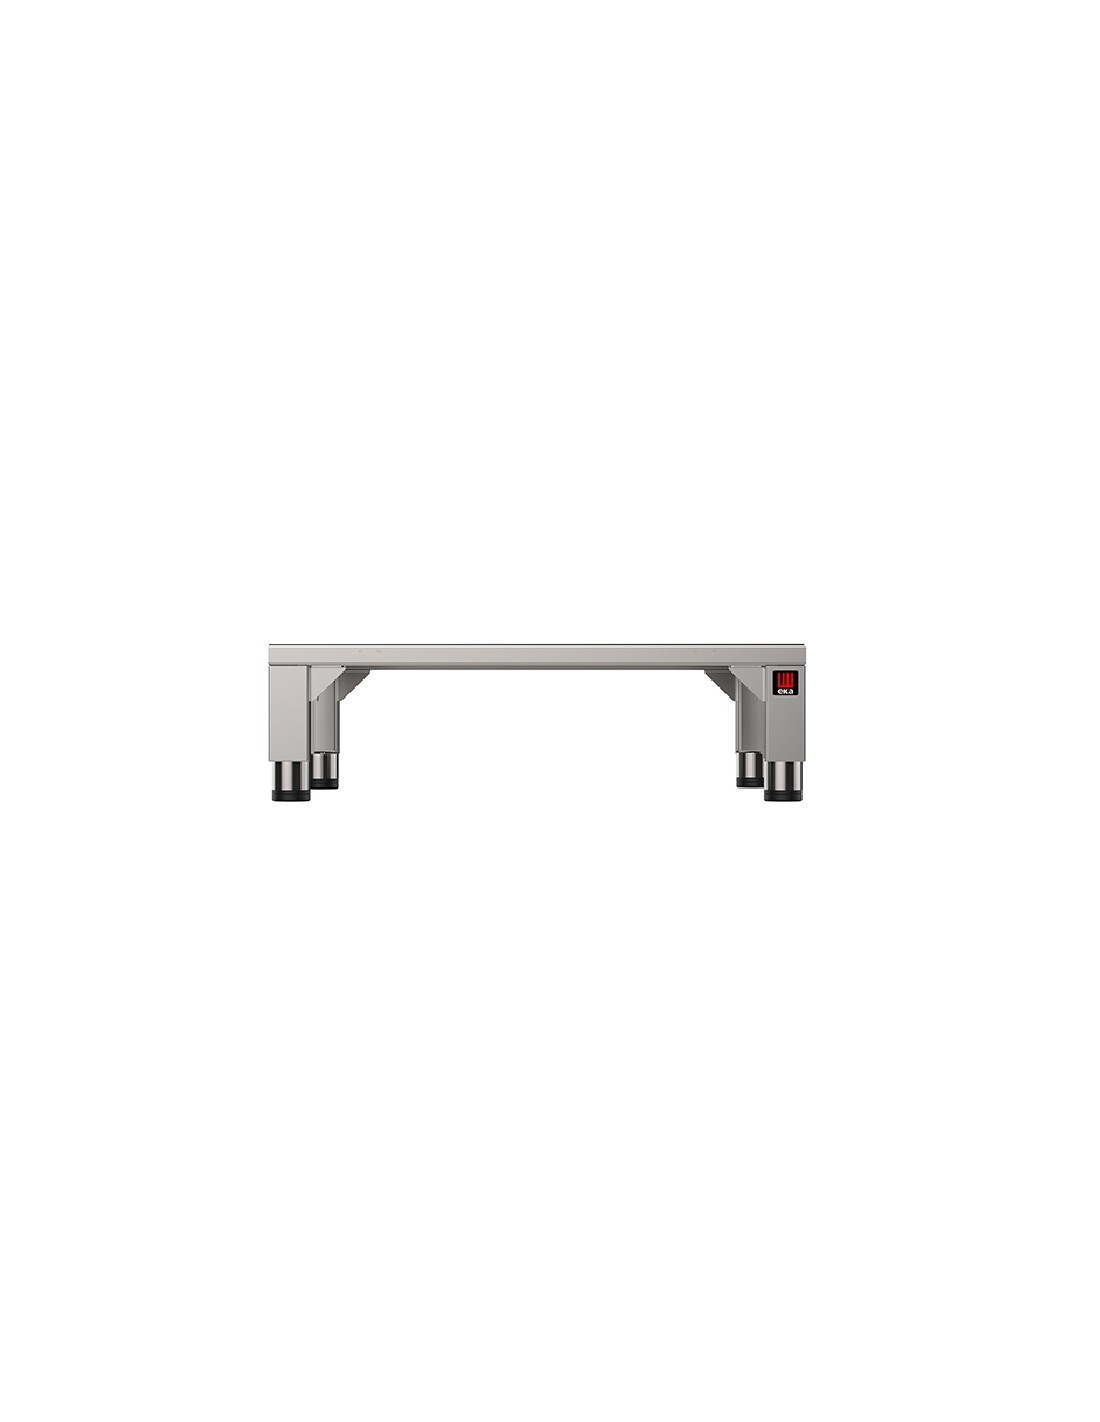 Tavolo fisso - Acciaio inox AISI 430 - Supporti per forni 5/7/11 teglie - Dimensioni cm 73 x 60 x 22h